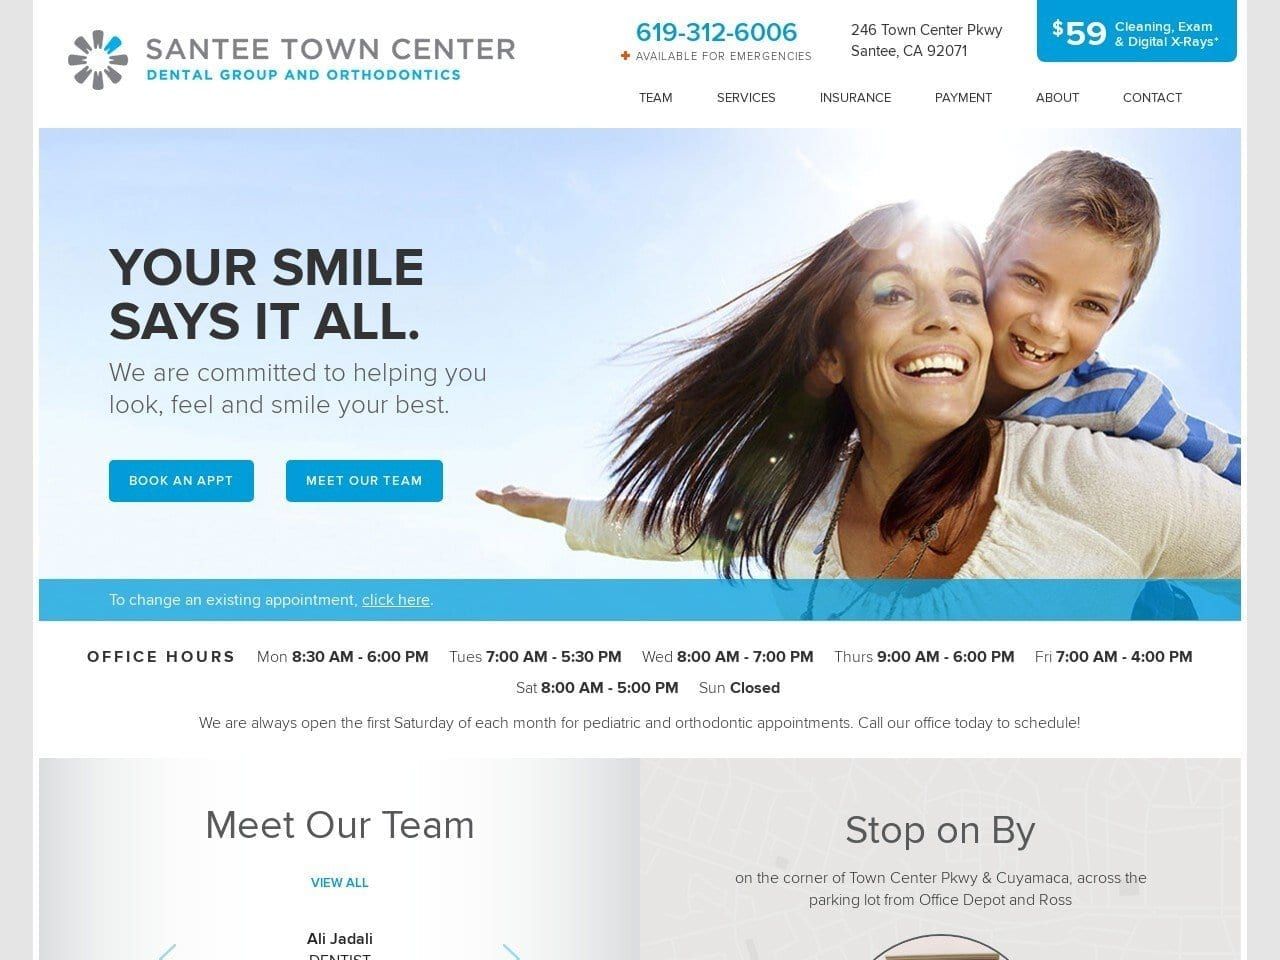 Santee Town Center Dental Group and Orthodontics Website Screenshot from santeetowncenterdental.com